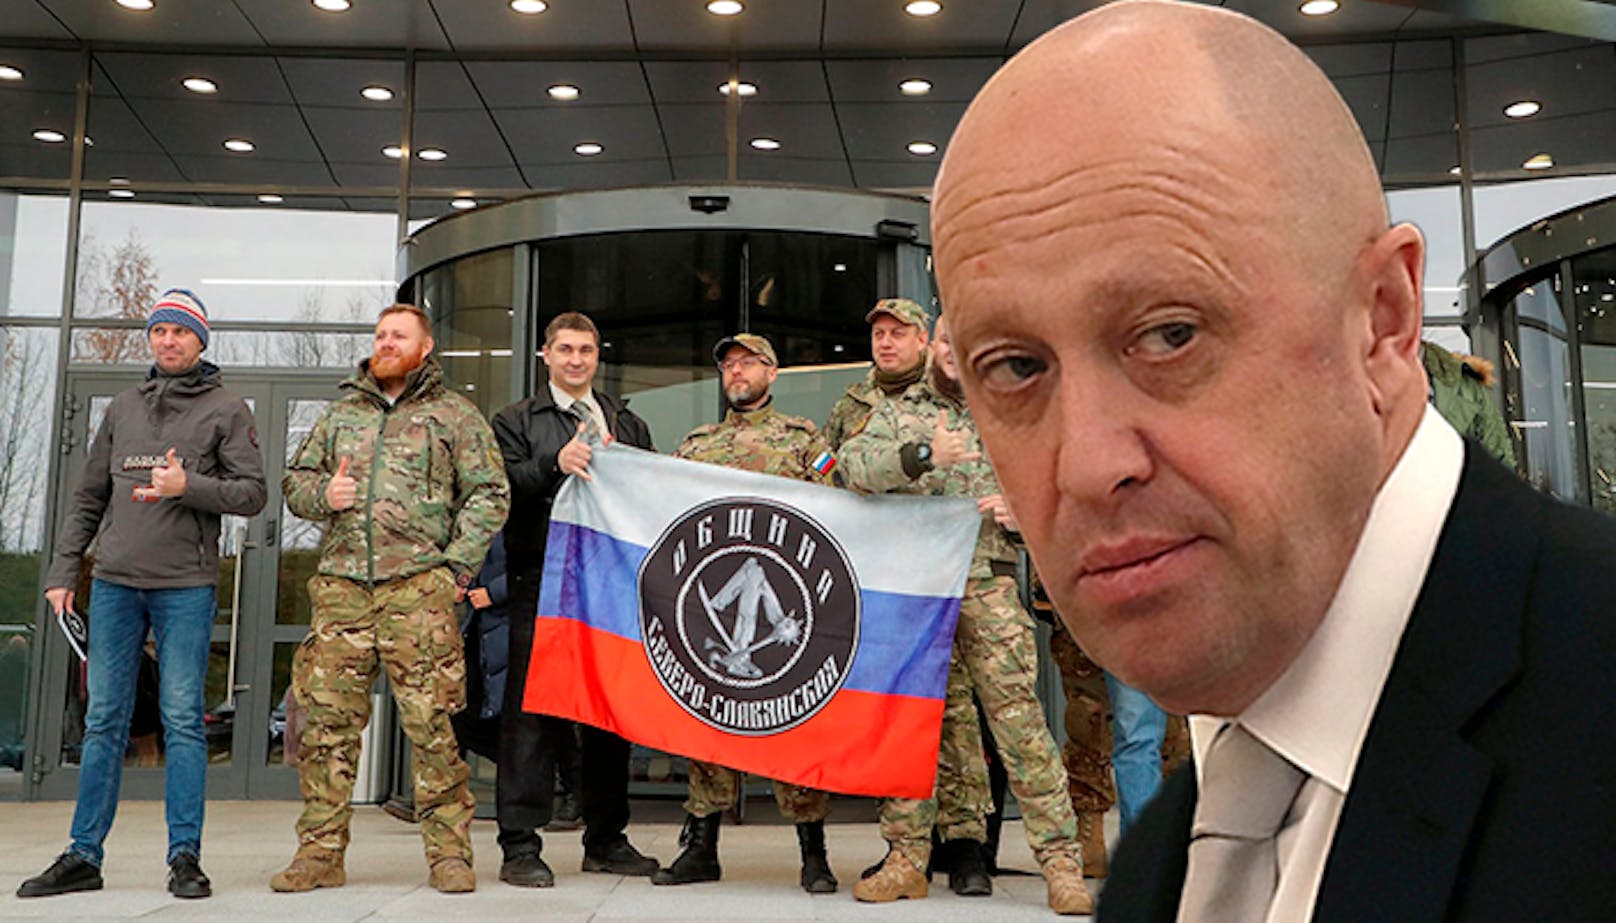 Die EU hat Sanktionen gegen die russische Söldnergruppe Wagner verhängt. Ebenfalls im Bild: Der Chef der Truppe Jewgeni Prigoschin.